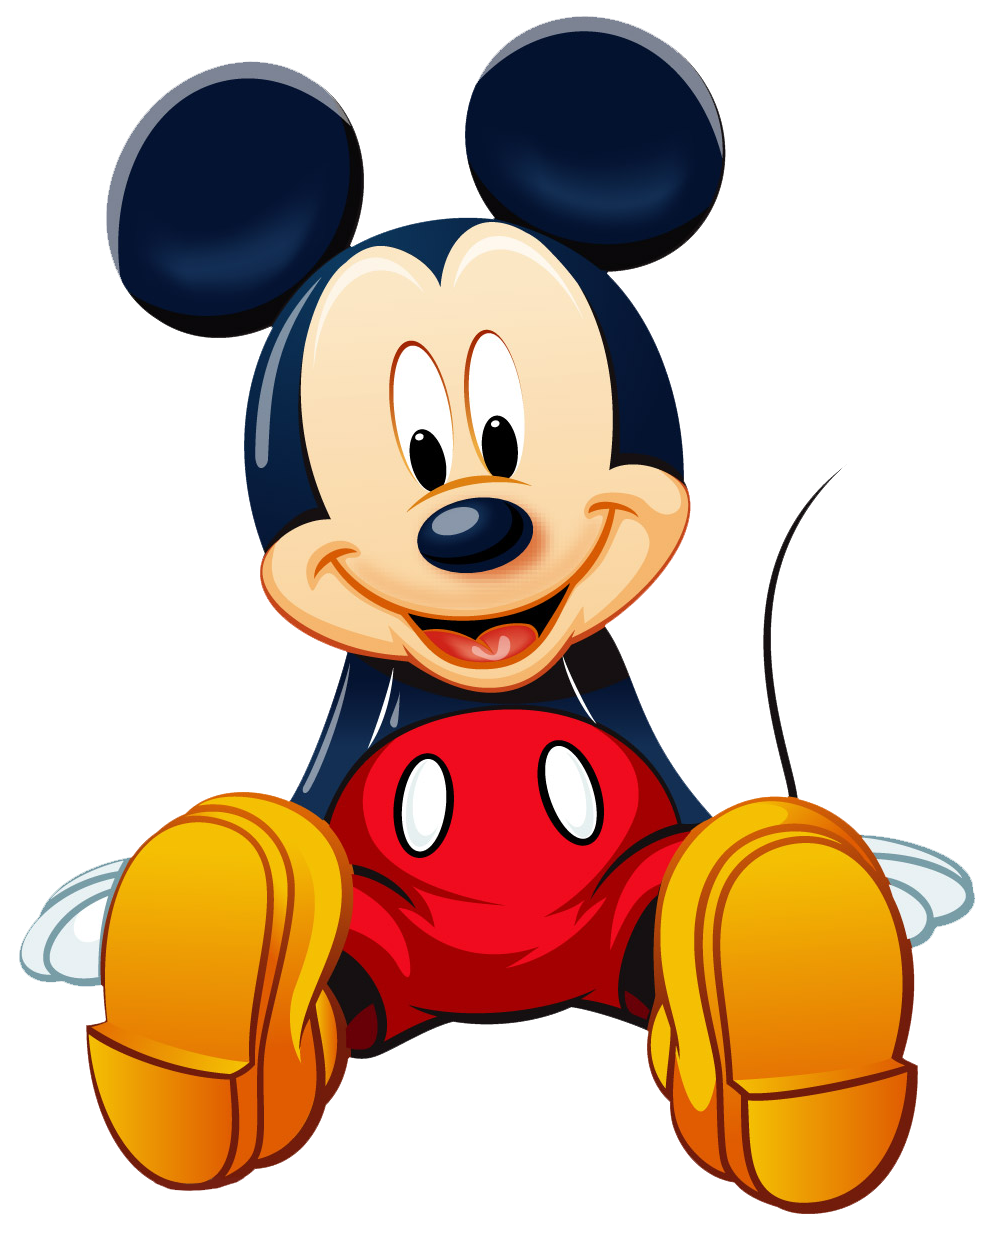 Найти персонажей из мультфильмов. Микки Маус Дисней. Мультяшные герои Микки Маус. Дисней персонажи Микки Мауса. Микки Маус из Диснея.